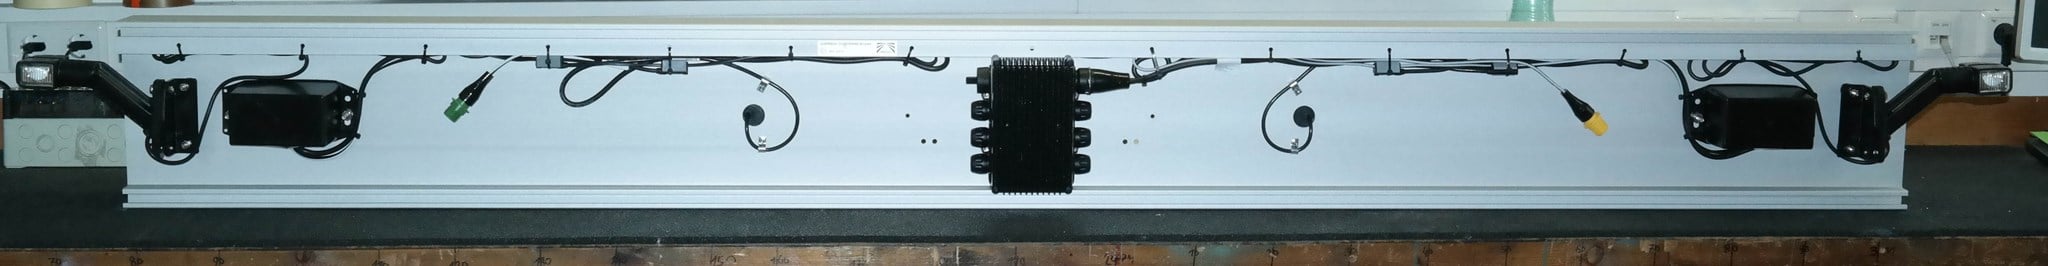 Picture of 97-1198-007C Aspöck ALU Unterfahrschutz eloxiert Europoint III Voll LED, Superpoint IV